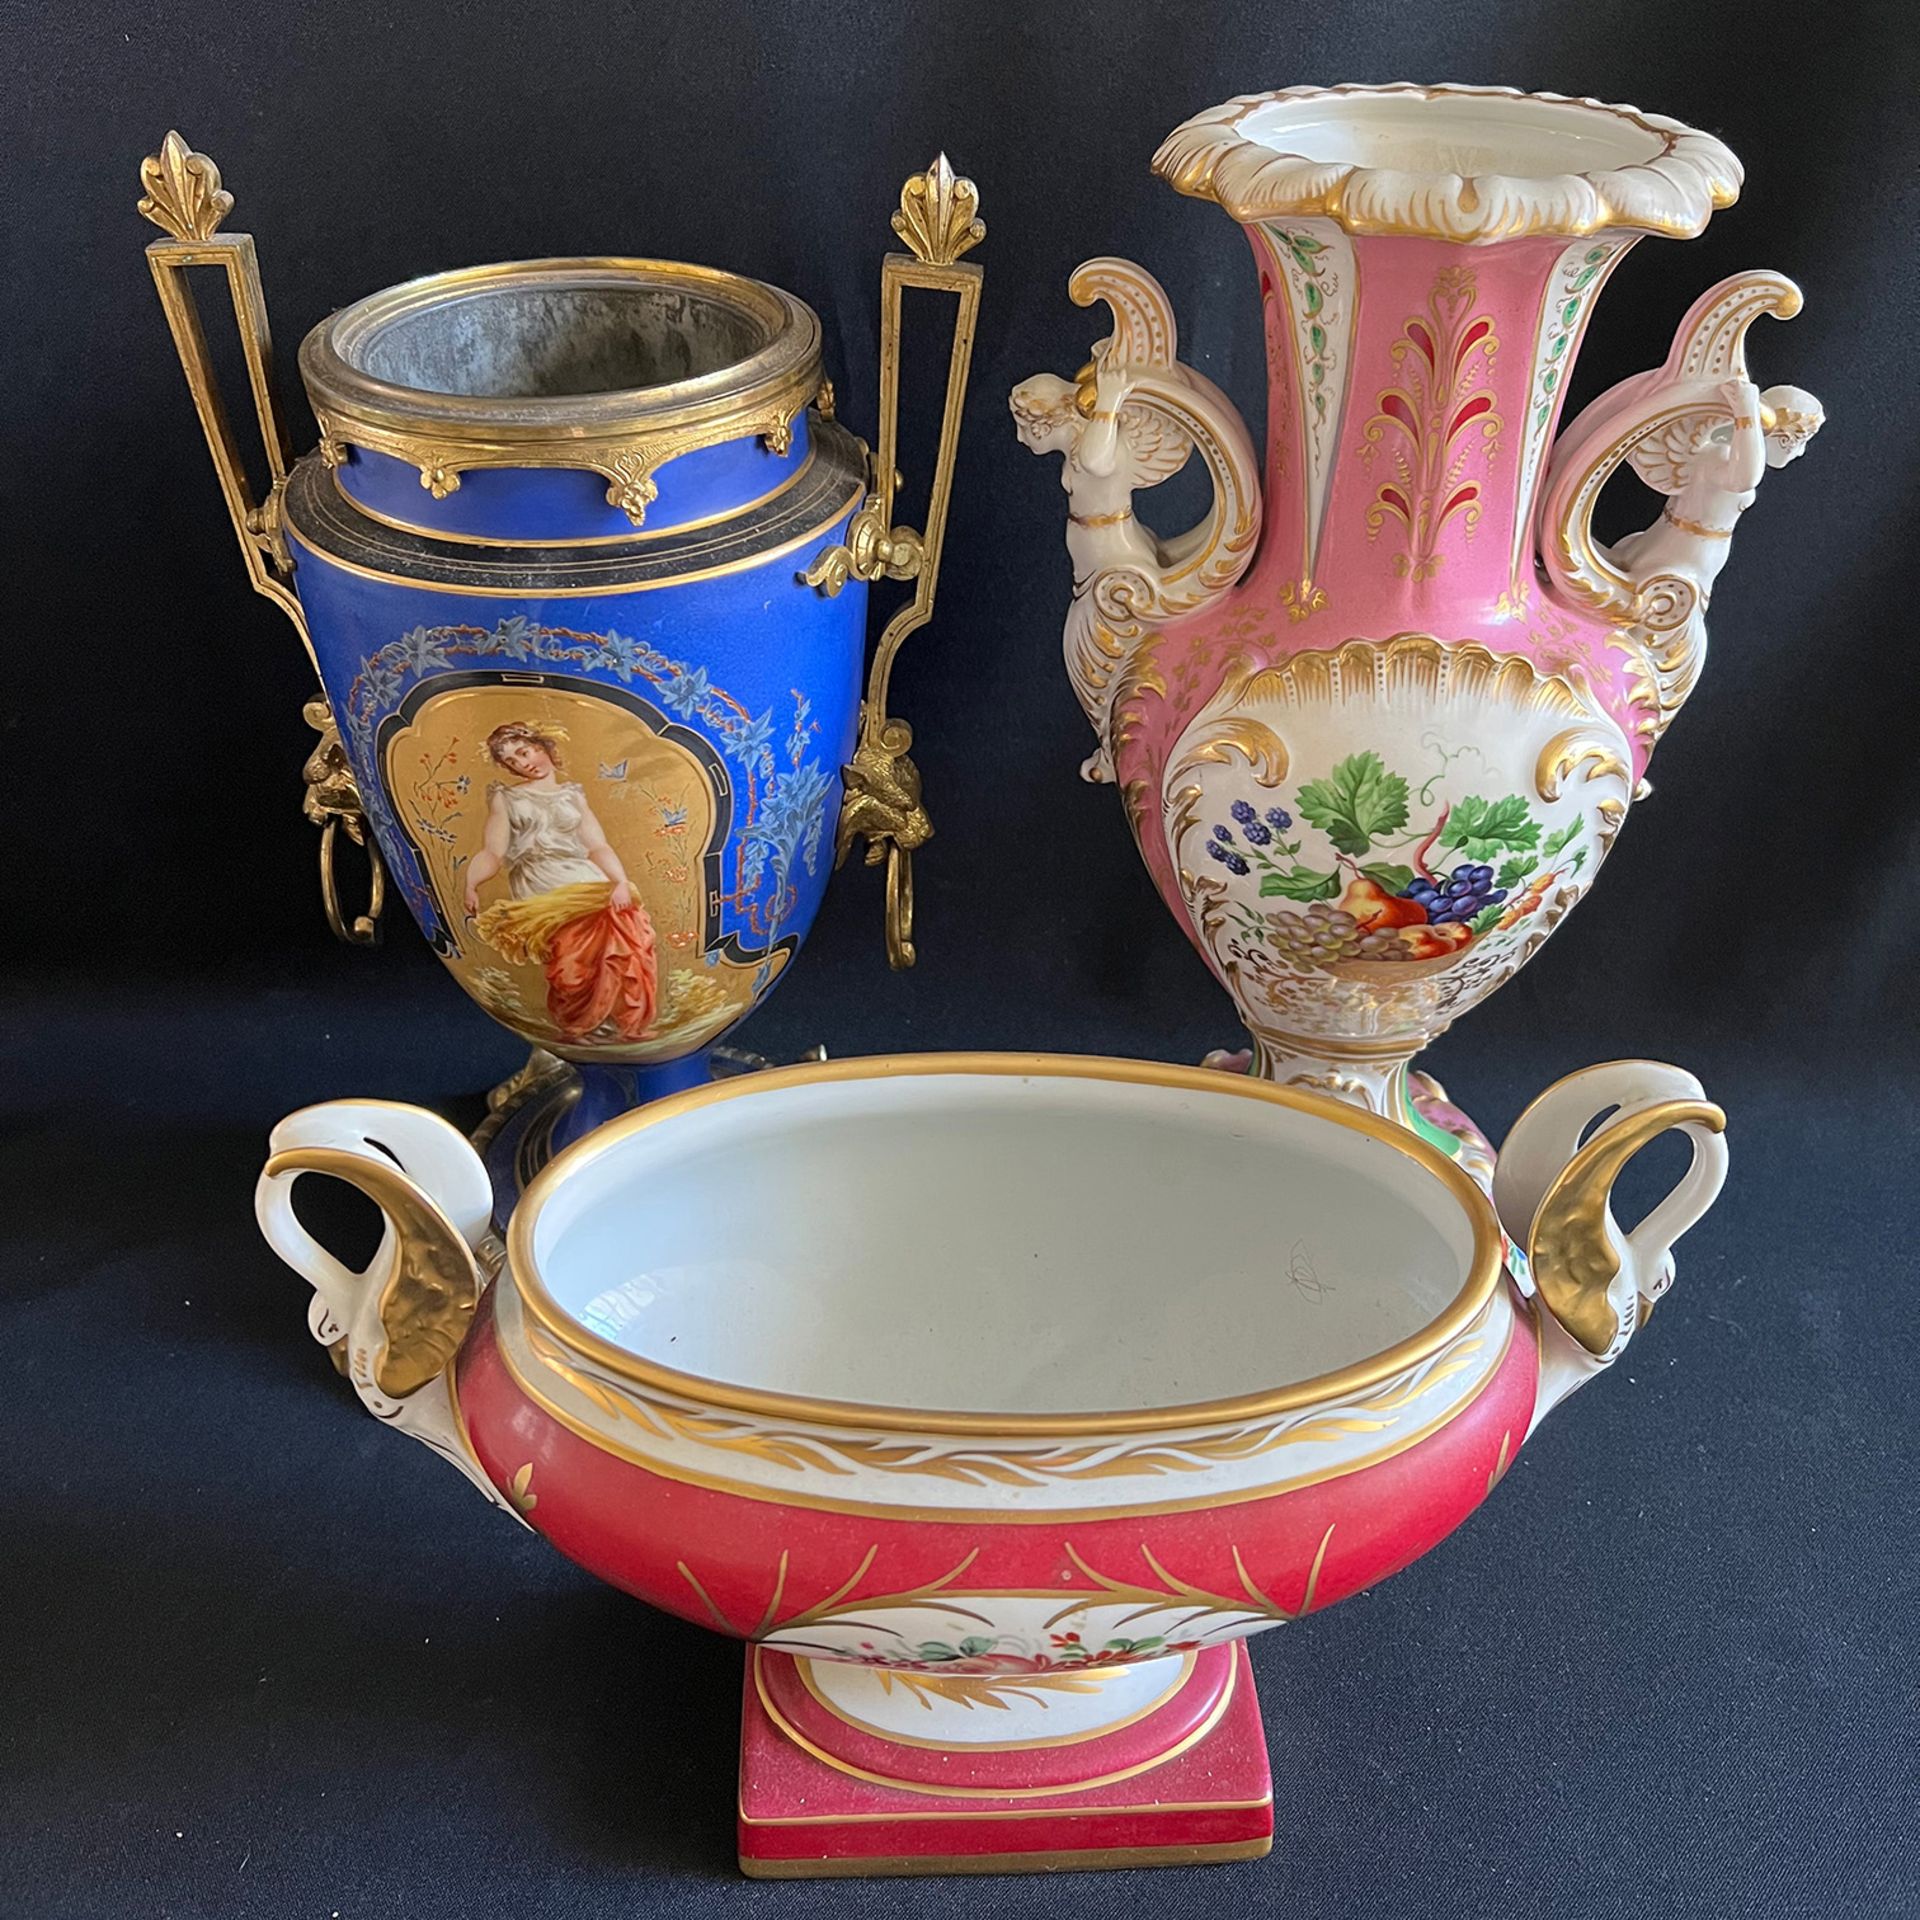 3 Sammlerobjekte, Porzellan, 19. Jh., bzw um 1900, Altersspuren: blaugrundige Vase mit Darstellung - Bild 4 aus 5